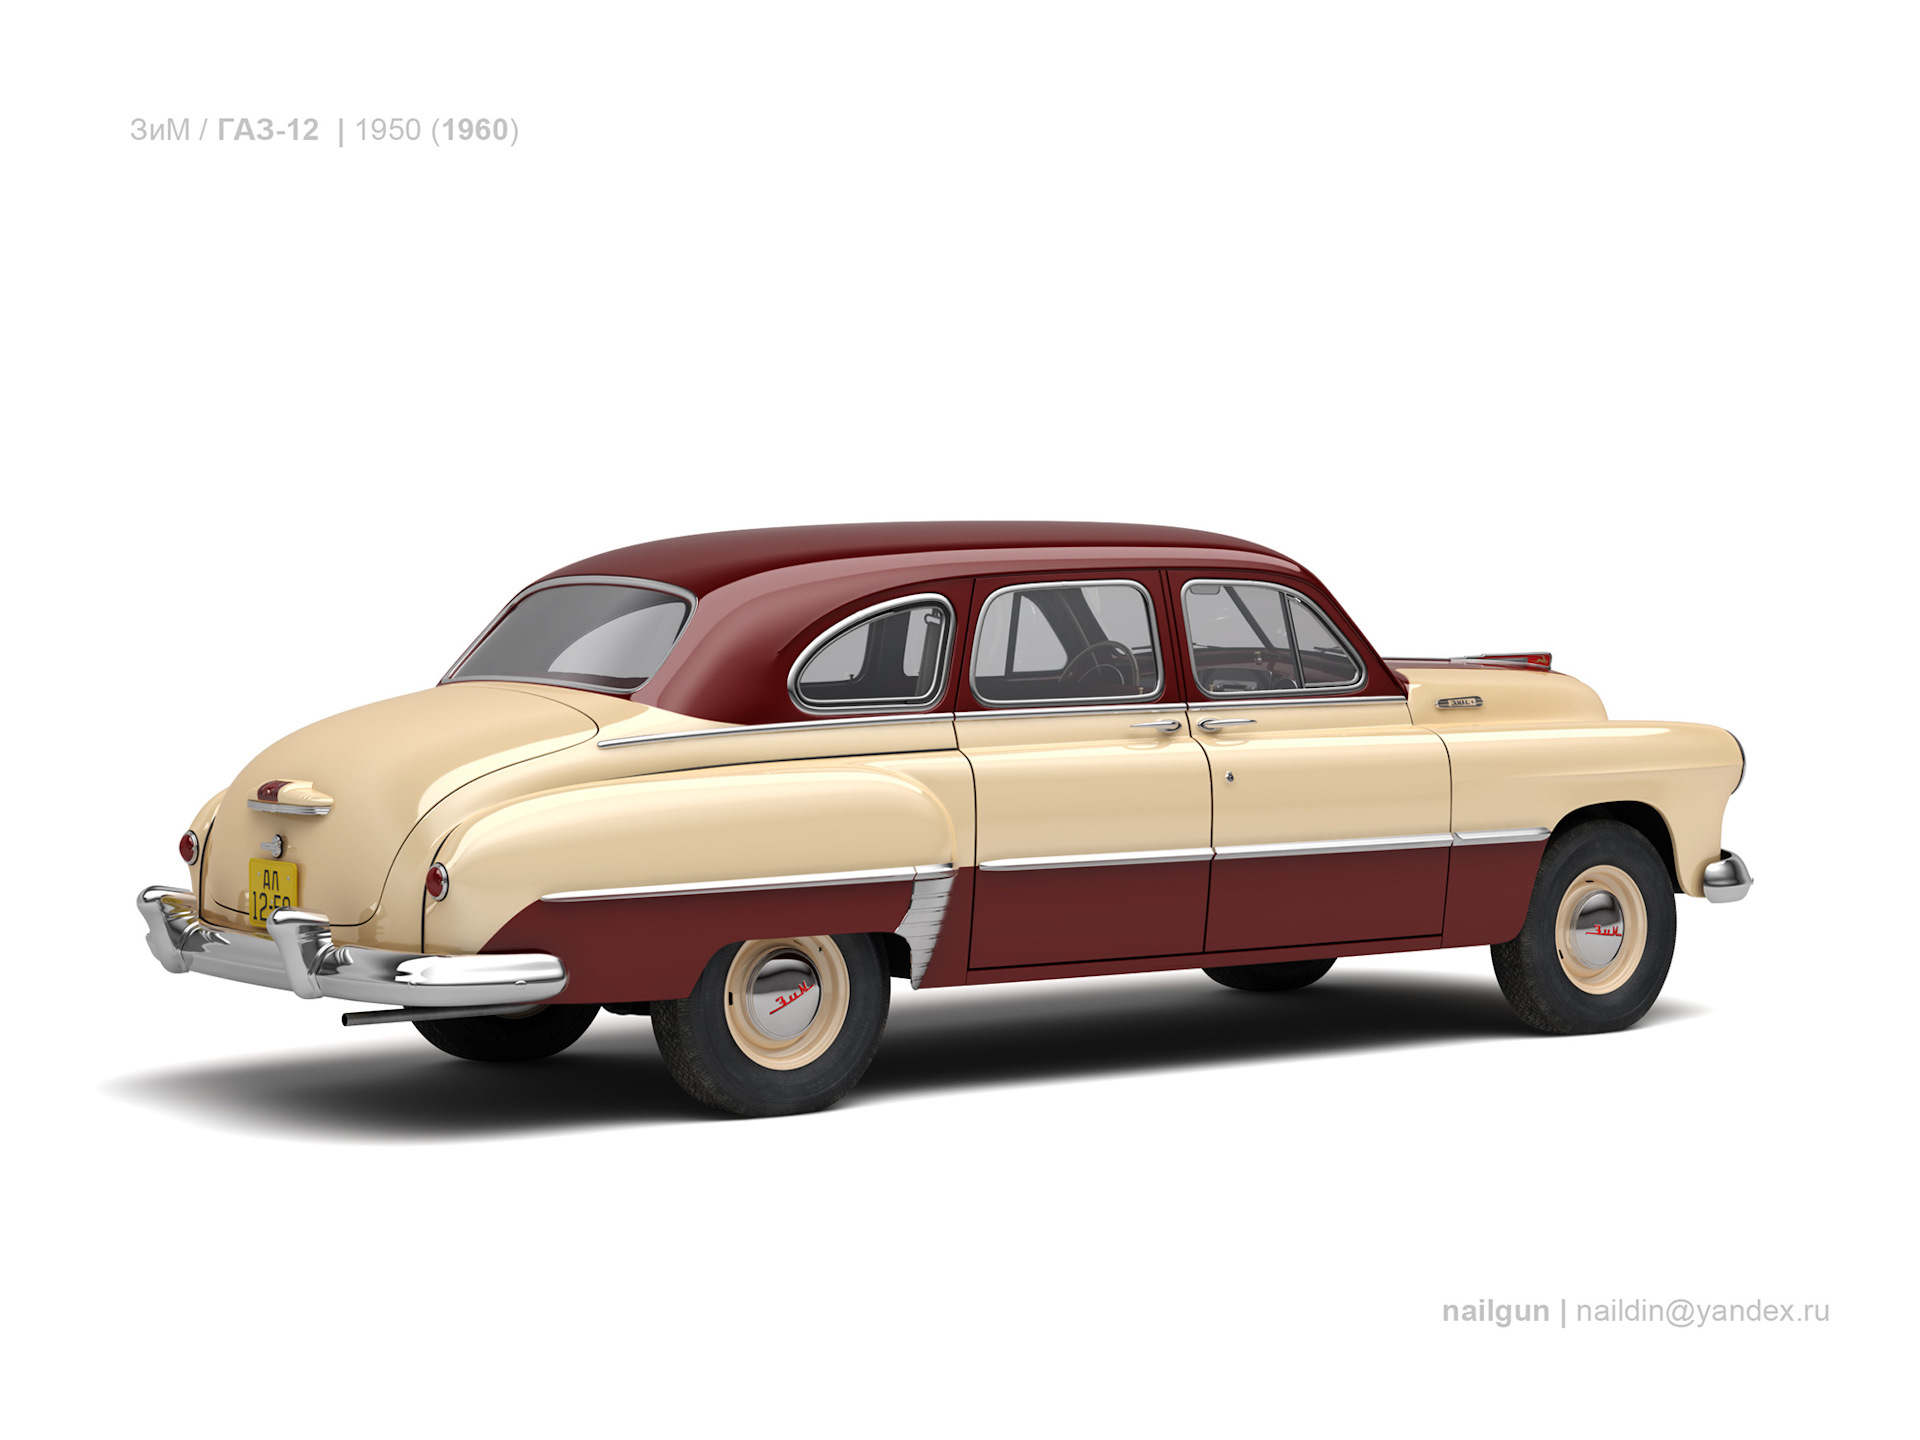 Газ хэтчбек. Автомобиль зим ГАЗ 12. ГАЗ 12 зим 1948-1960. ГАЗ 12 зим такси. ГАЗ 12 вид сбоку.